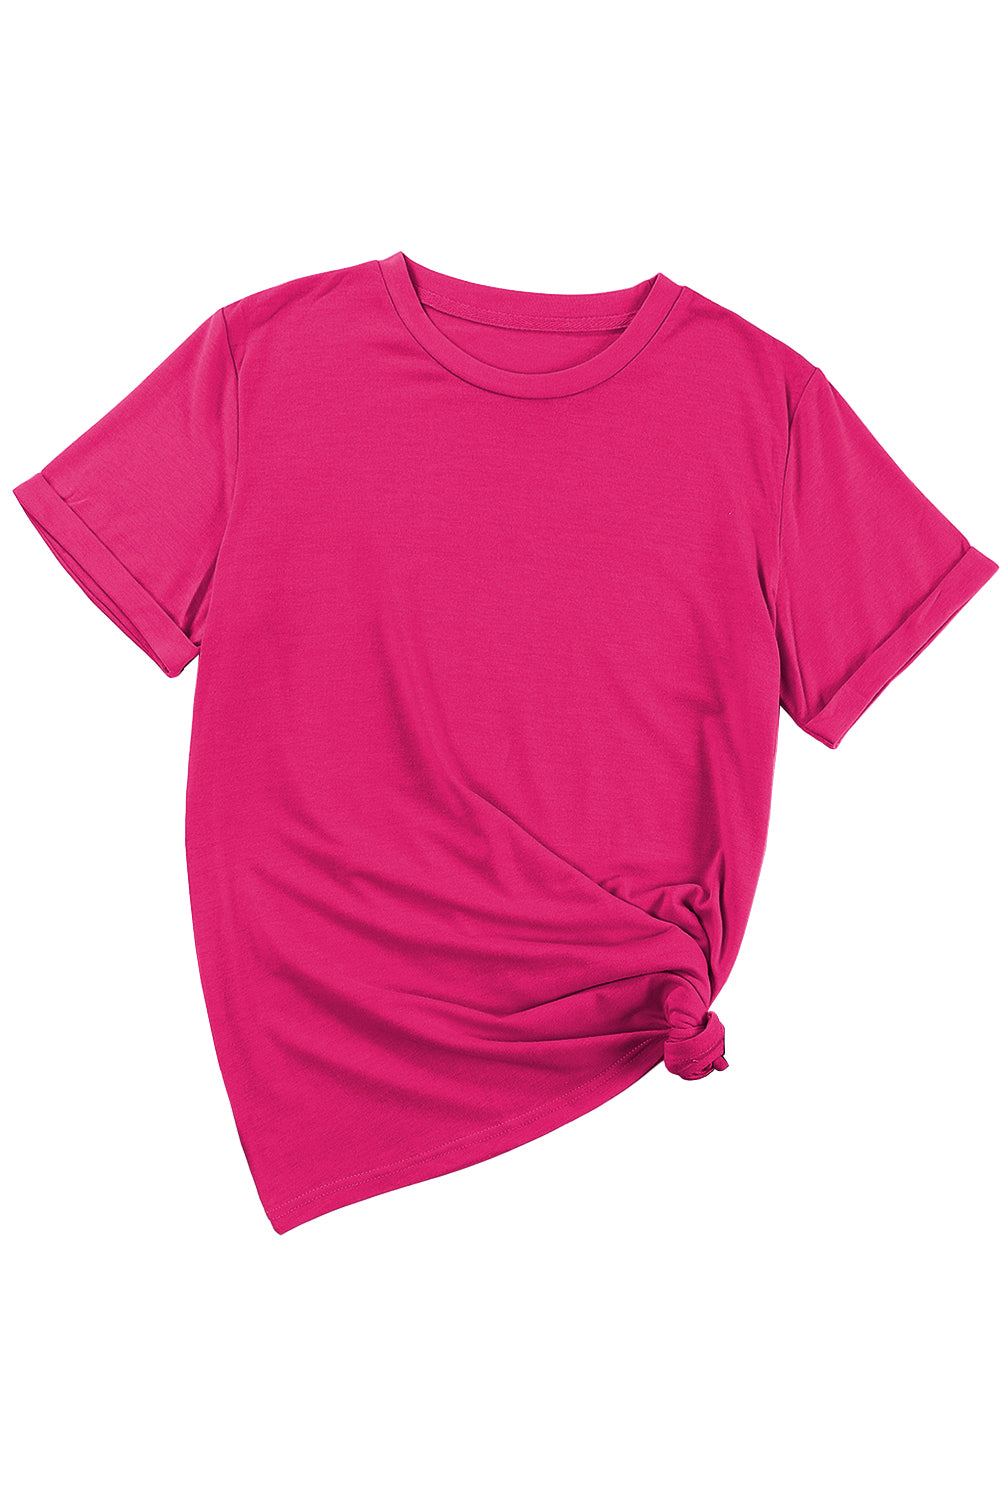 Rožnato rdeča navadna majica z okroglim izrezom za prosti čas